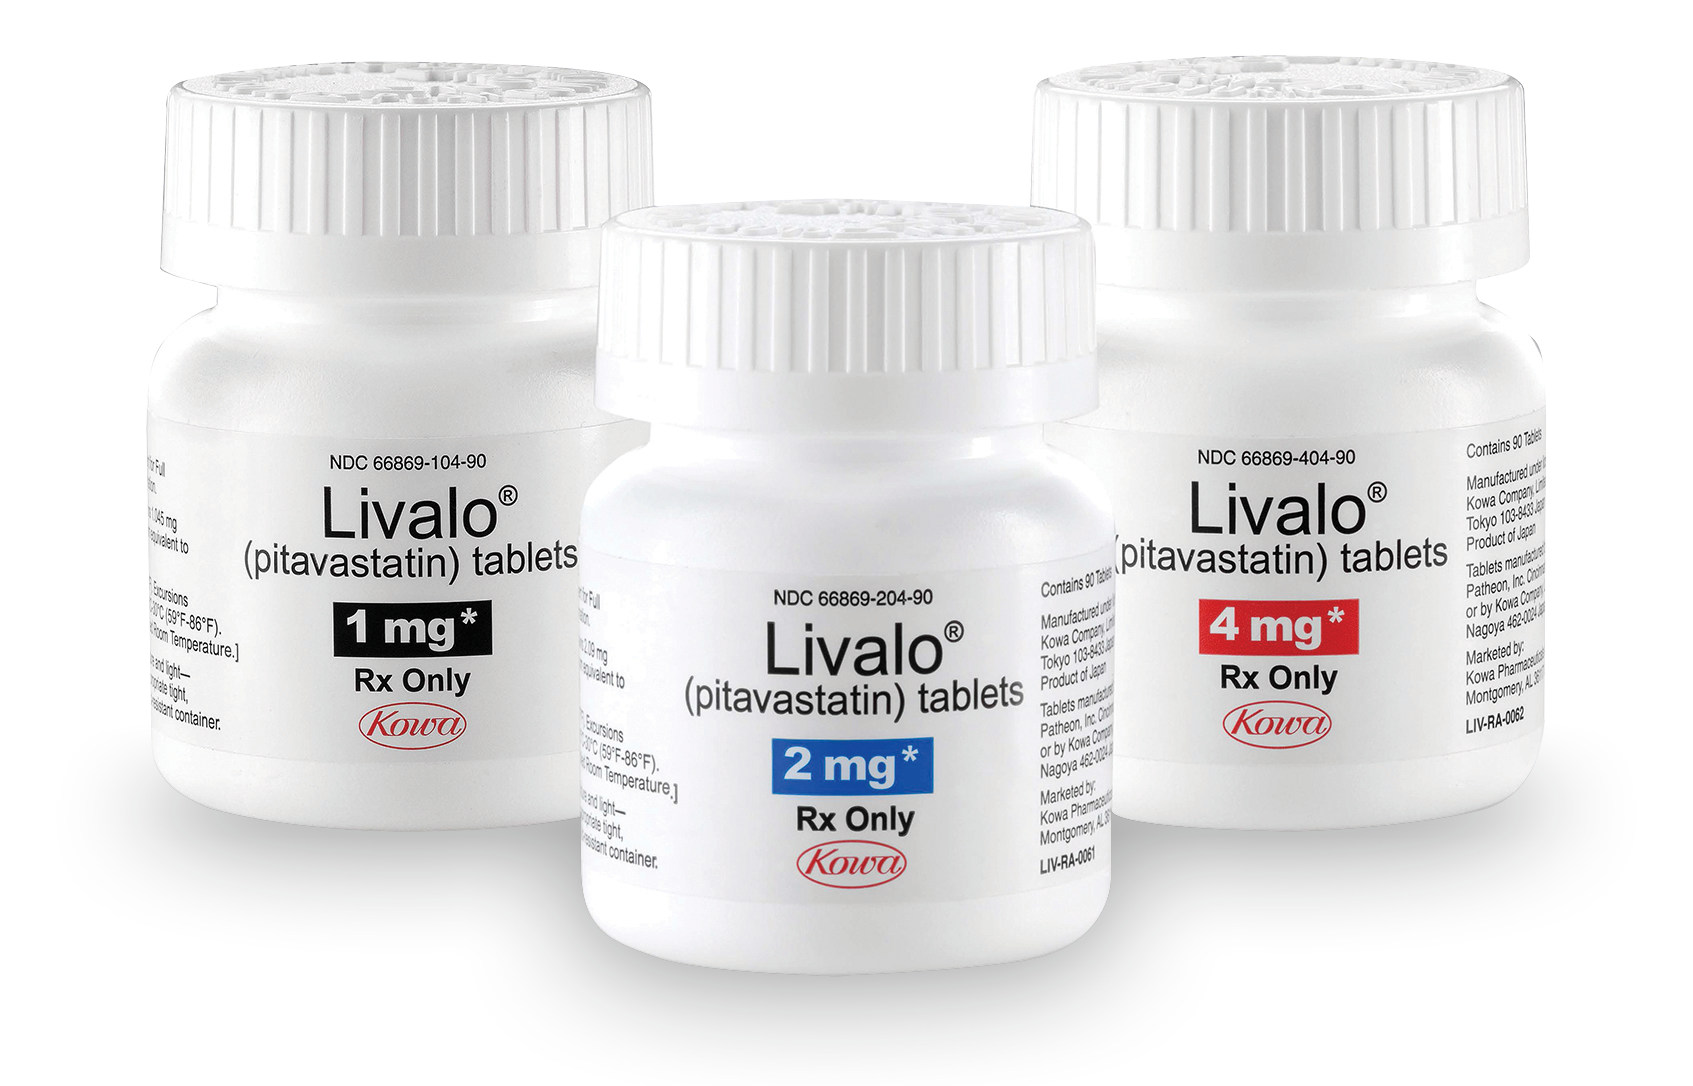 LIVALO pill bottles